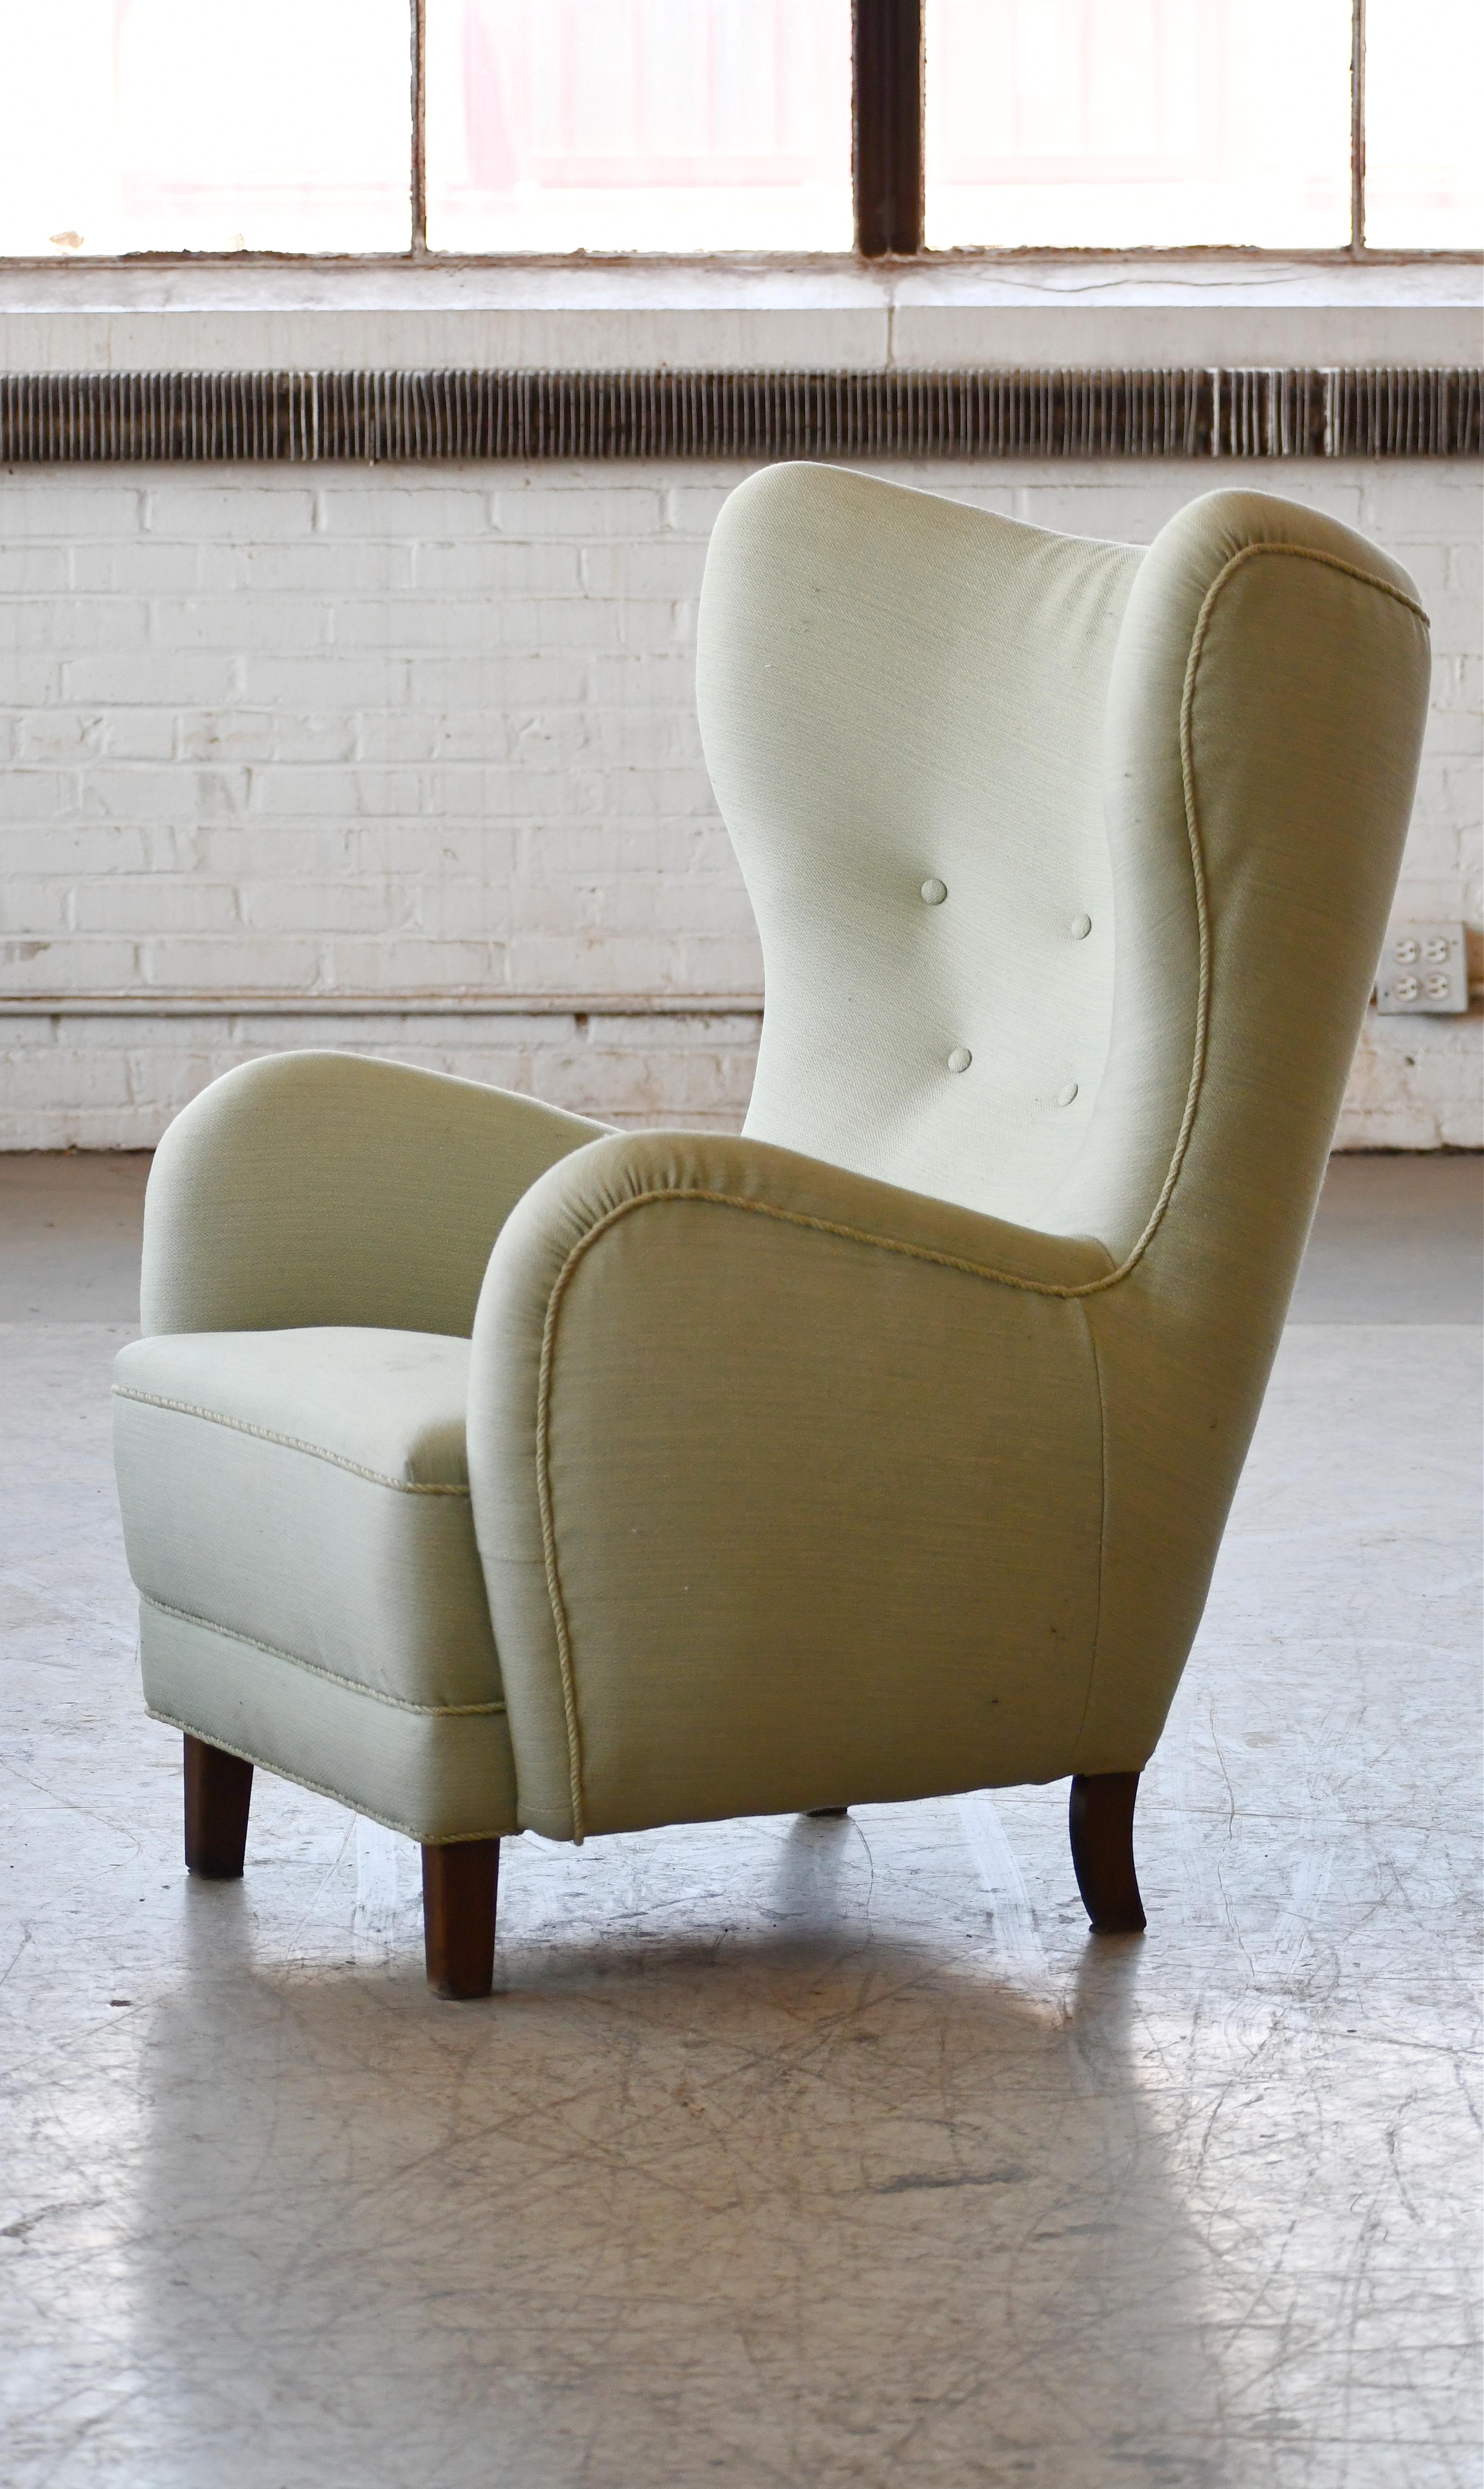 Schöne Flemming Lassen zugeschrieben hohe Rückenlehne Lounge-Stuhl gemacht, um 1940. Dieser ikonische Loungesessel ist wahrscheinlich einer der perfektesten Hochlehner, die je entworfen wurden. Mit seiner ultra-eleganten, sinnlichen Form und dem